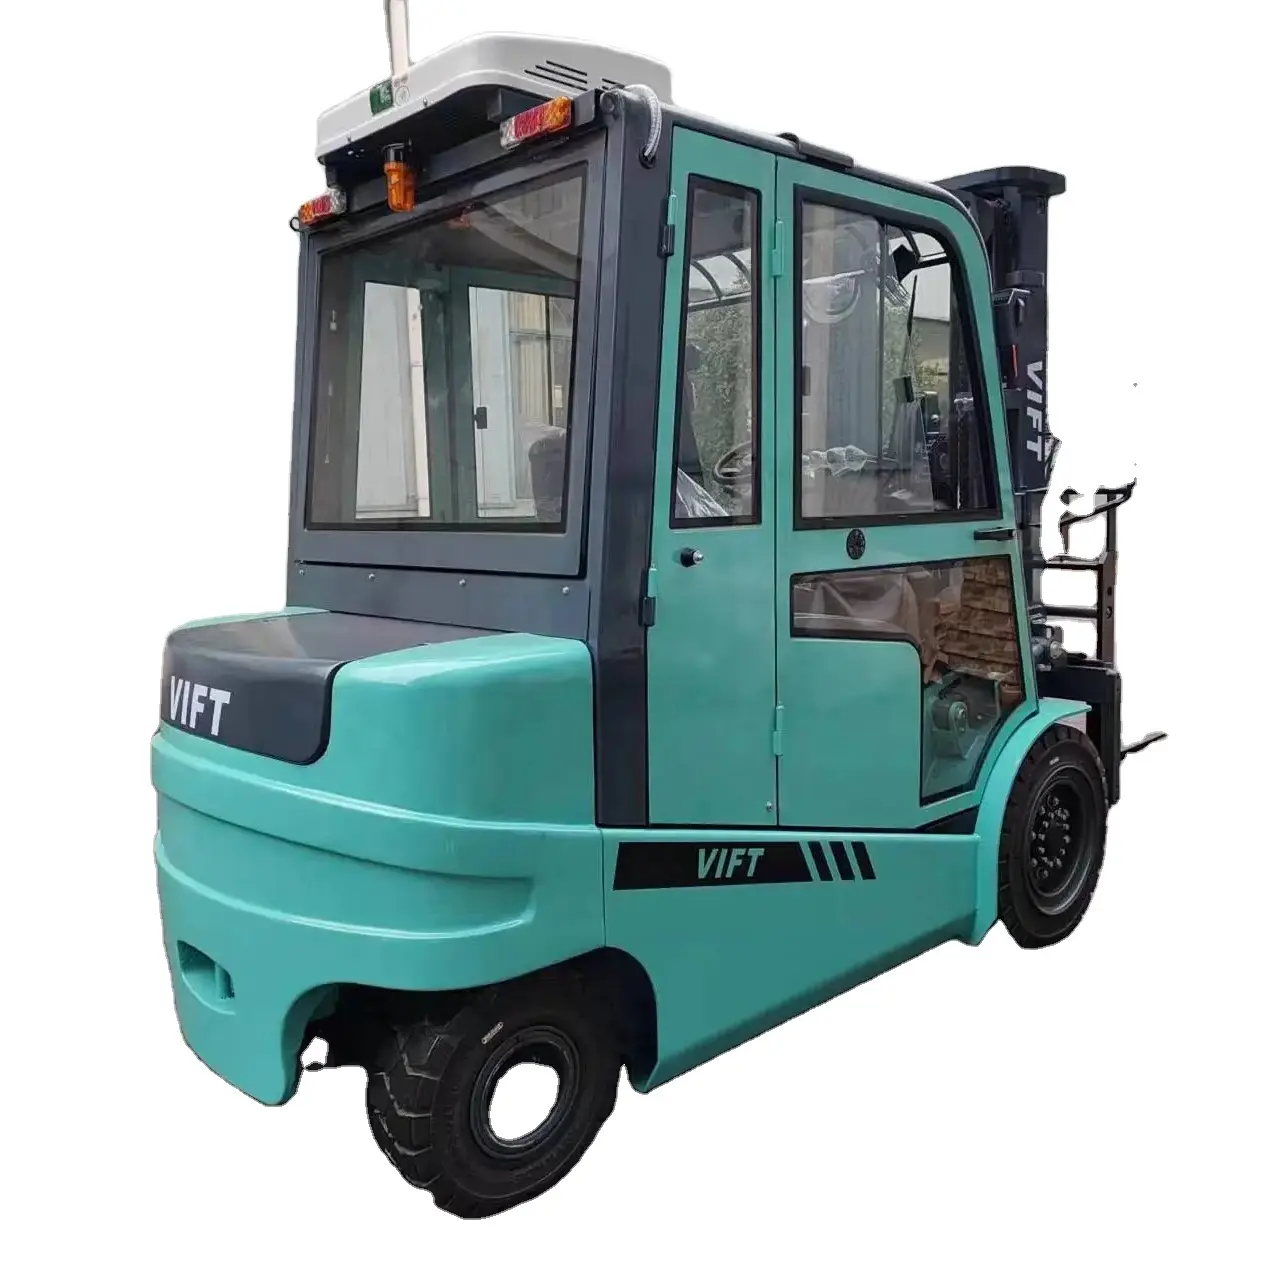 VIFT üretici tasarım 4.5 5.0 6.0 Ton elektrikli Forklift tam kapalı kabin ısıtıcı klima soğuk depolama çalışma